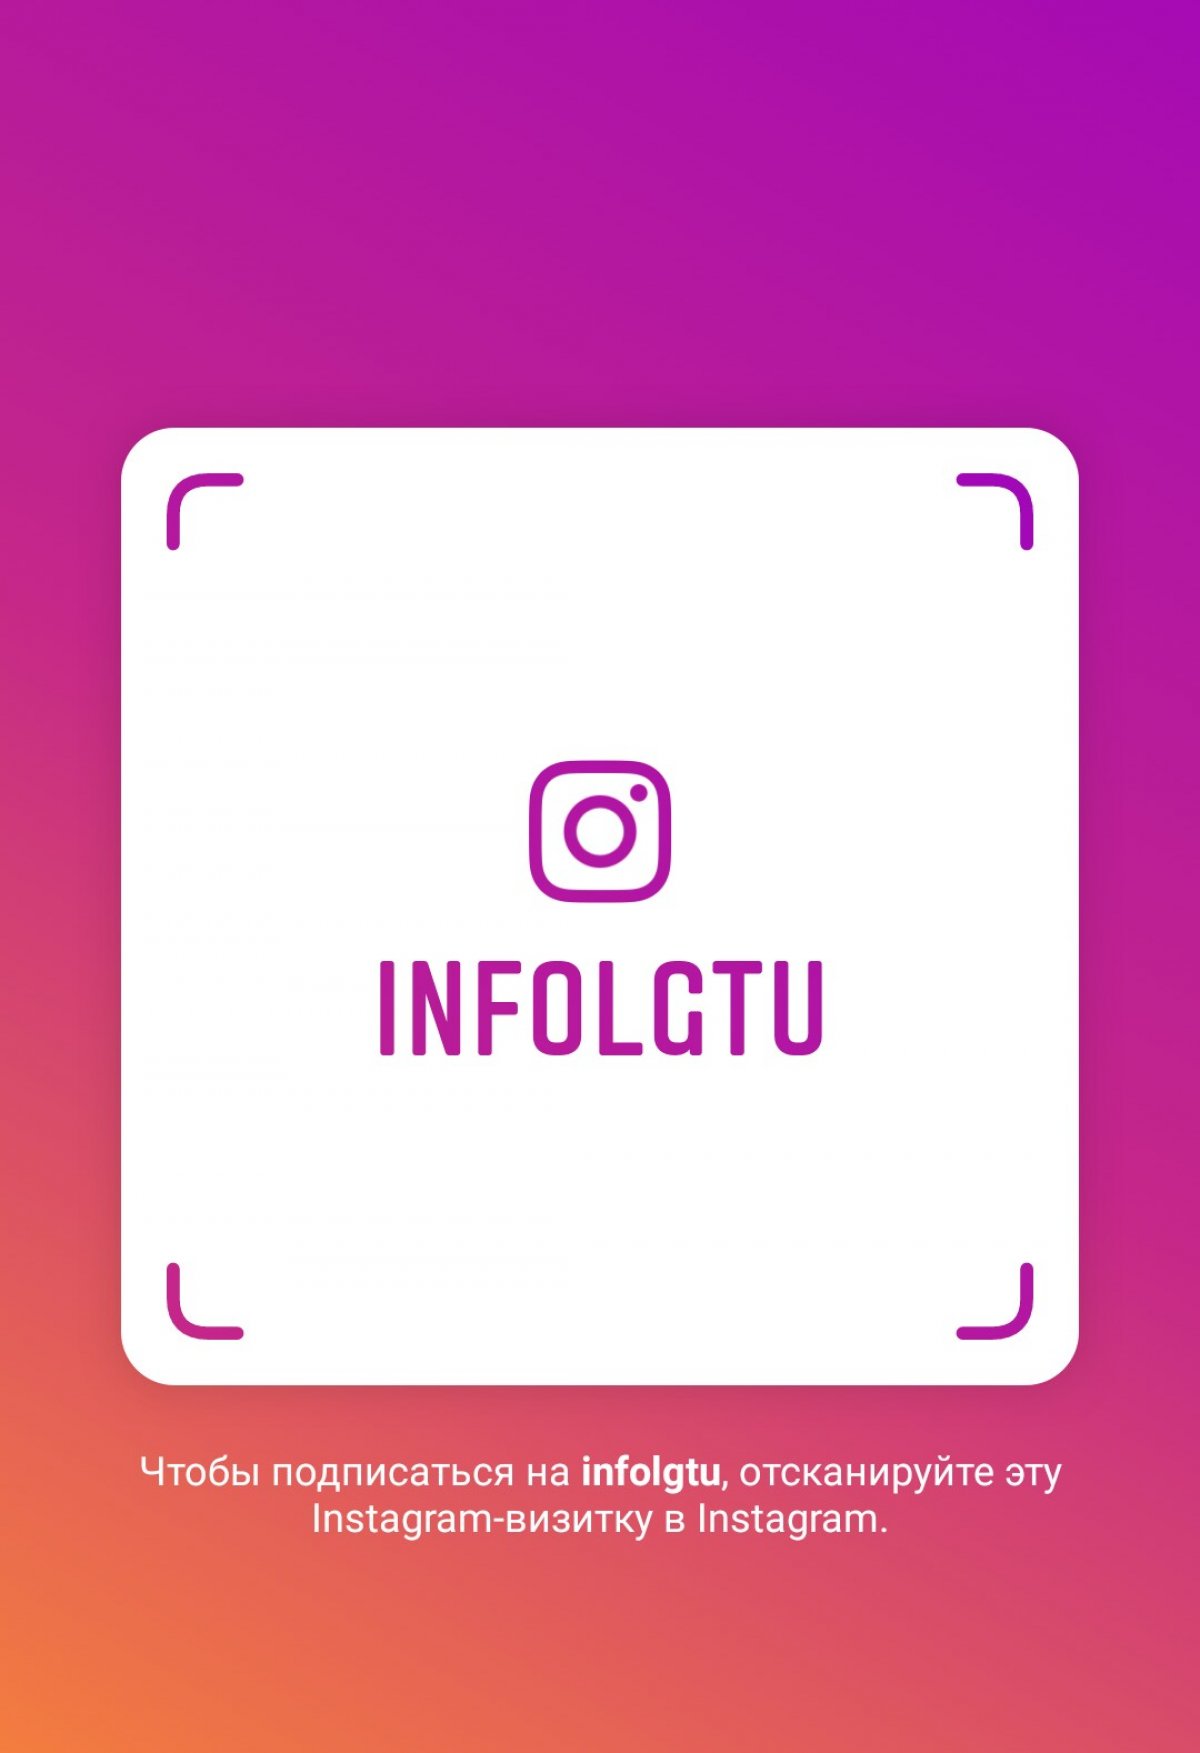 Подписывайтесь на нас в Instagram! Имя пользователя: infolgtu